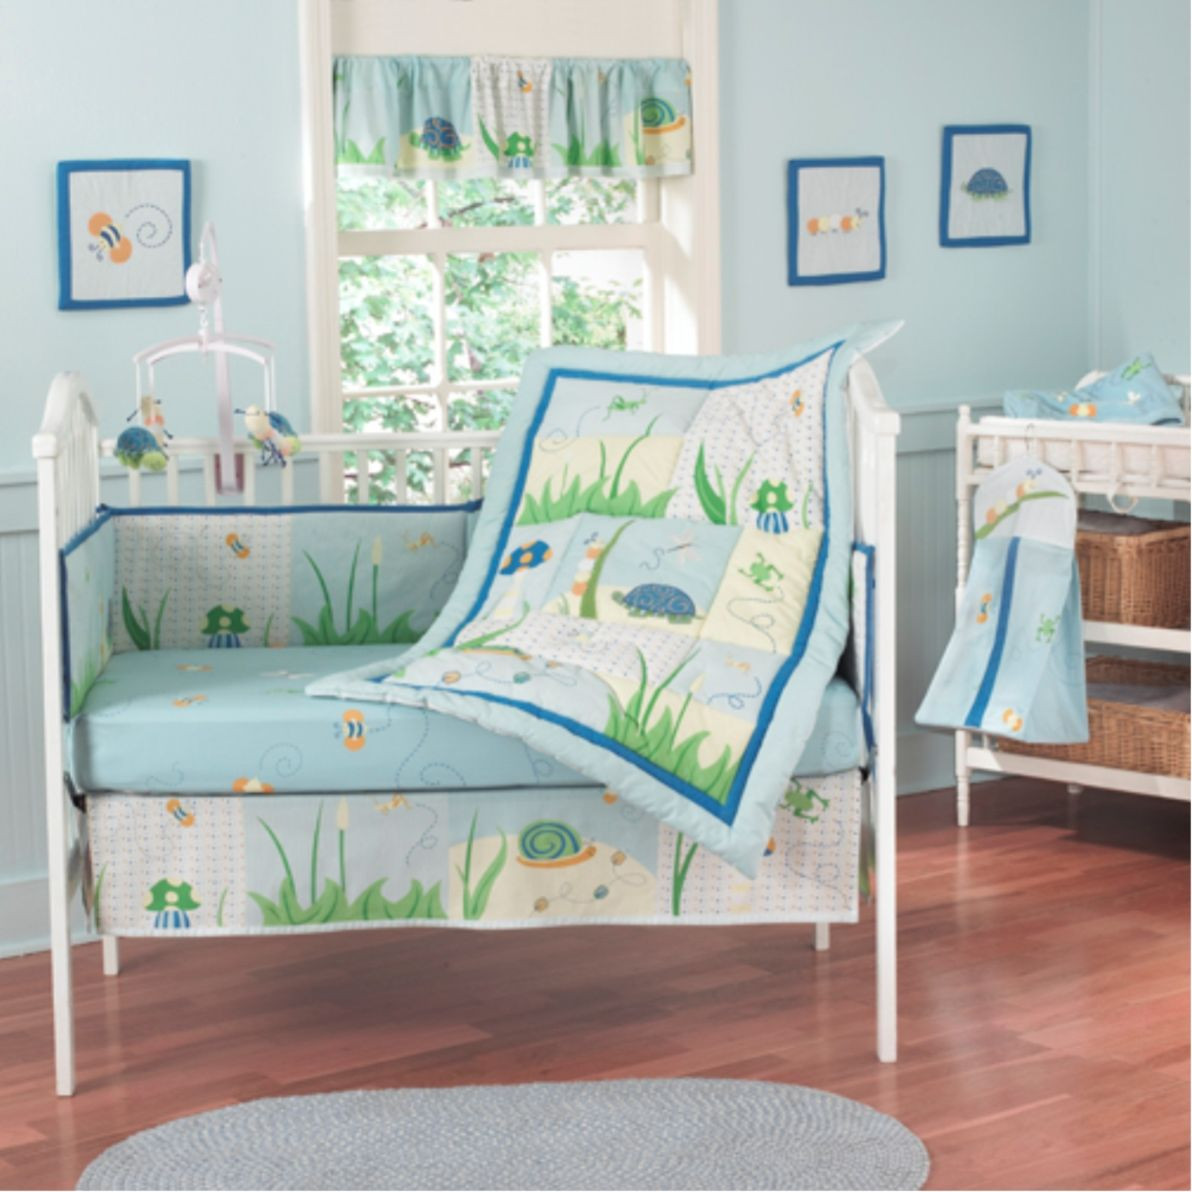 Boy Bedroom Sets
 Baby Boy Bedroom Sets Home Furniture Design